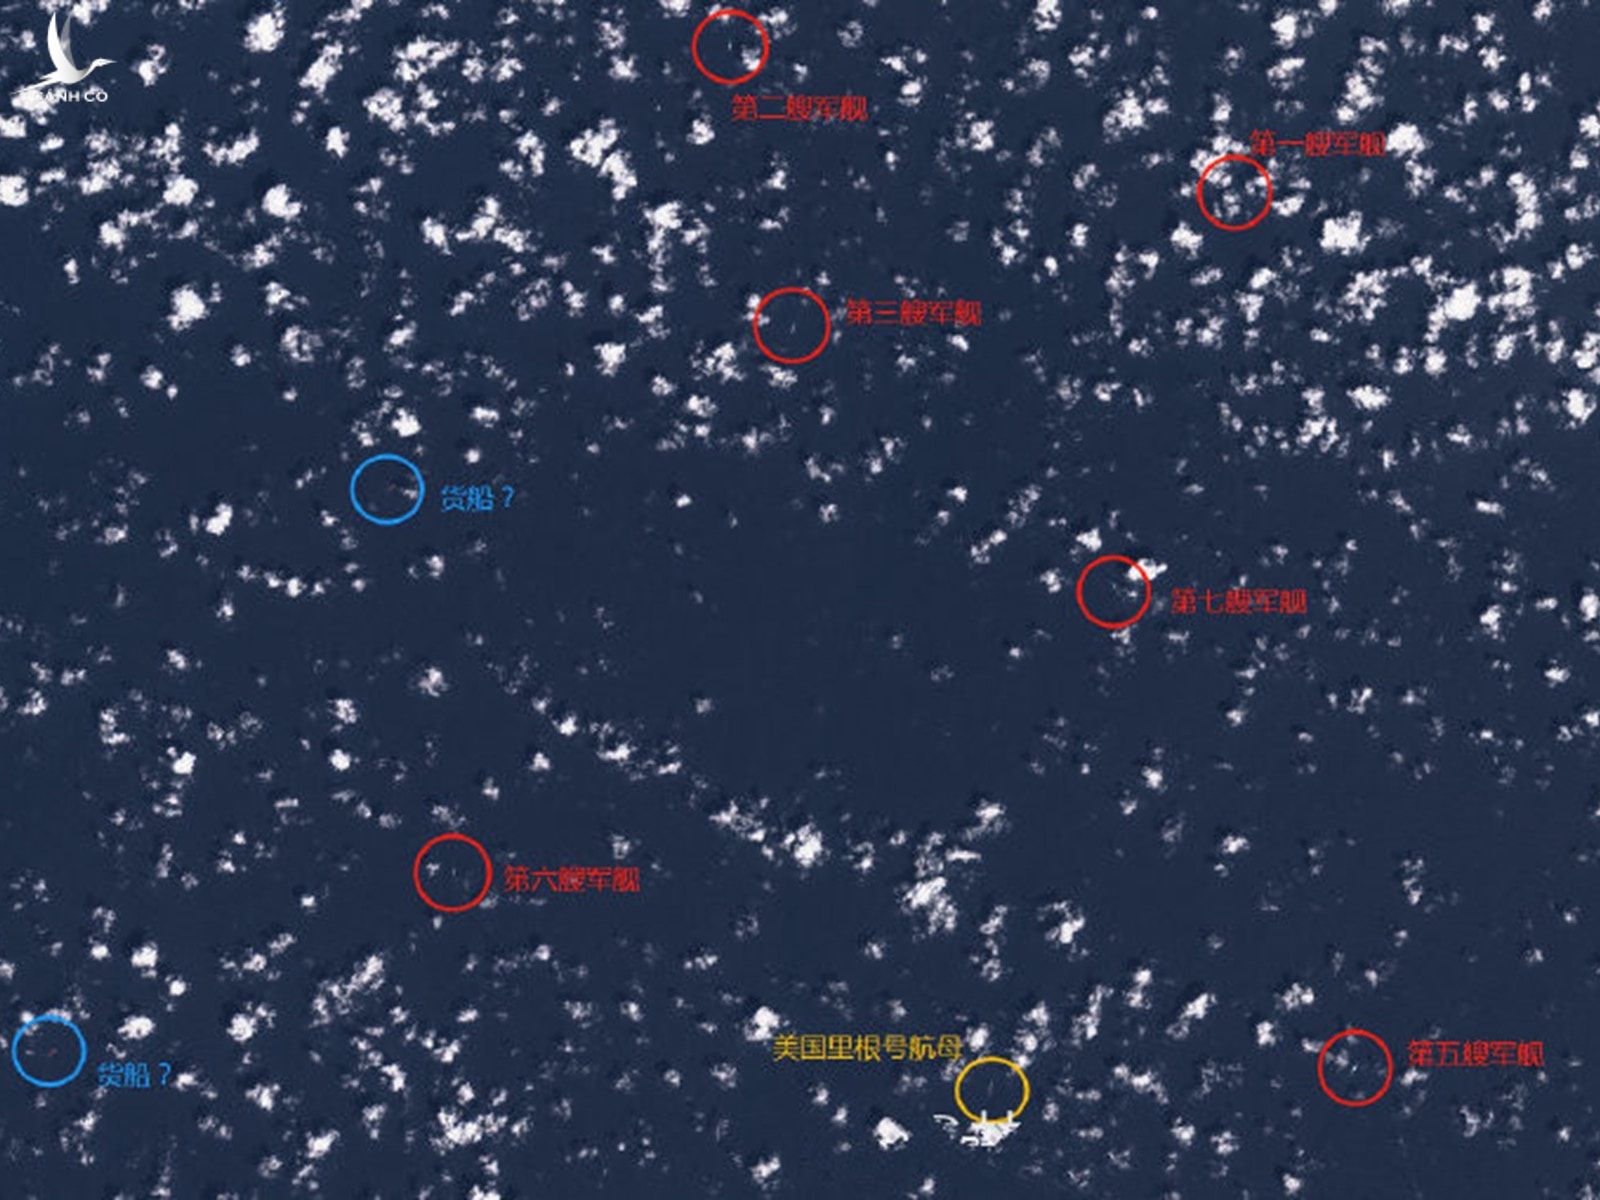 Hình ảnh vệ tinh được cho là thể hiện vị trí tàu USS Ronald Reagan trên biển Đông vào cuối tháng 9 (màu vàng), với các chiến hạm Trung Quốc (màu đỏ) xuất hiện xung quanh (Ảnh: Weibo) 